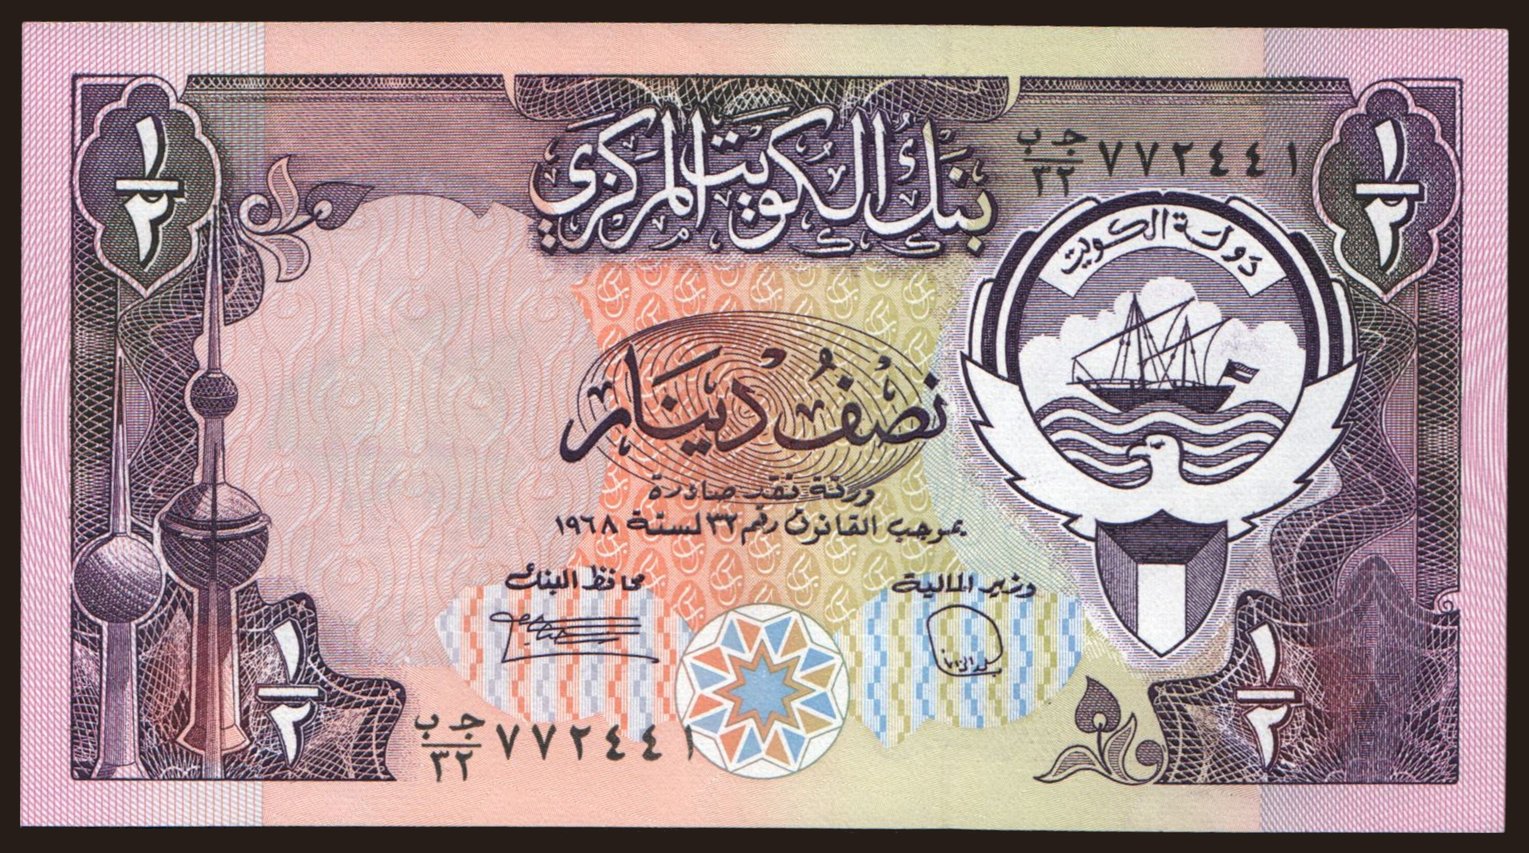 1/2 dinar, 1980